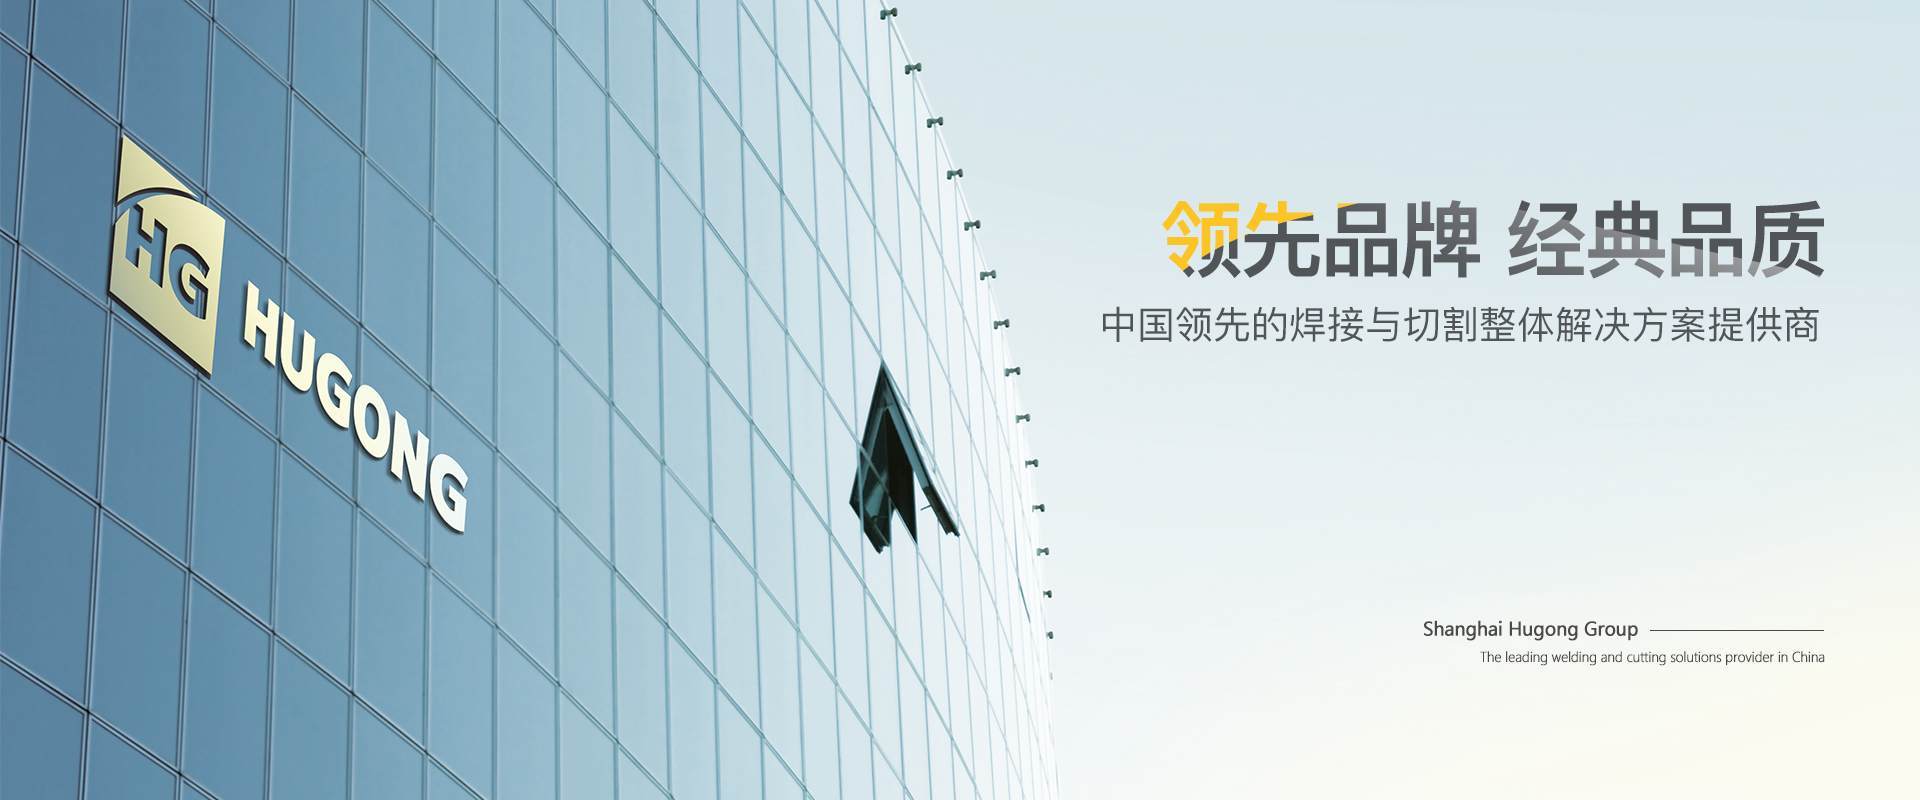 上海沪工-中国领先的焊接与切割整体解决方案提供商